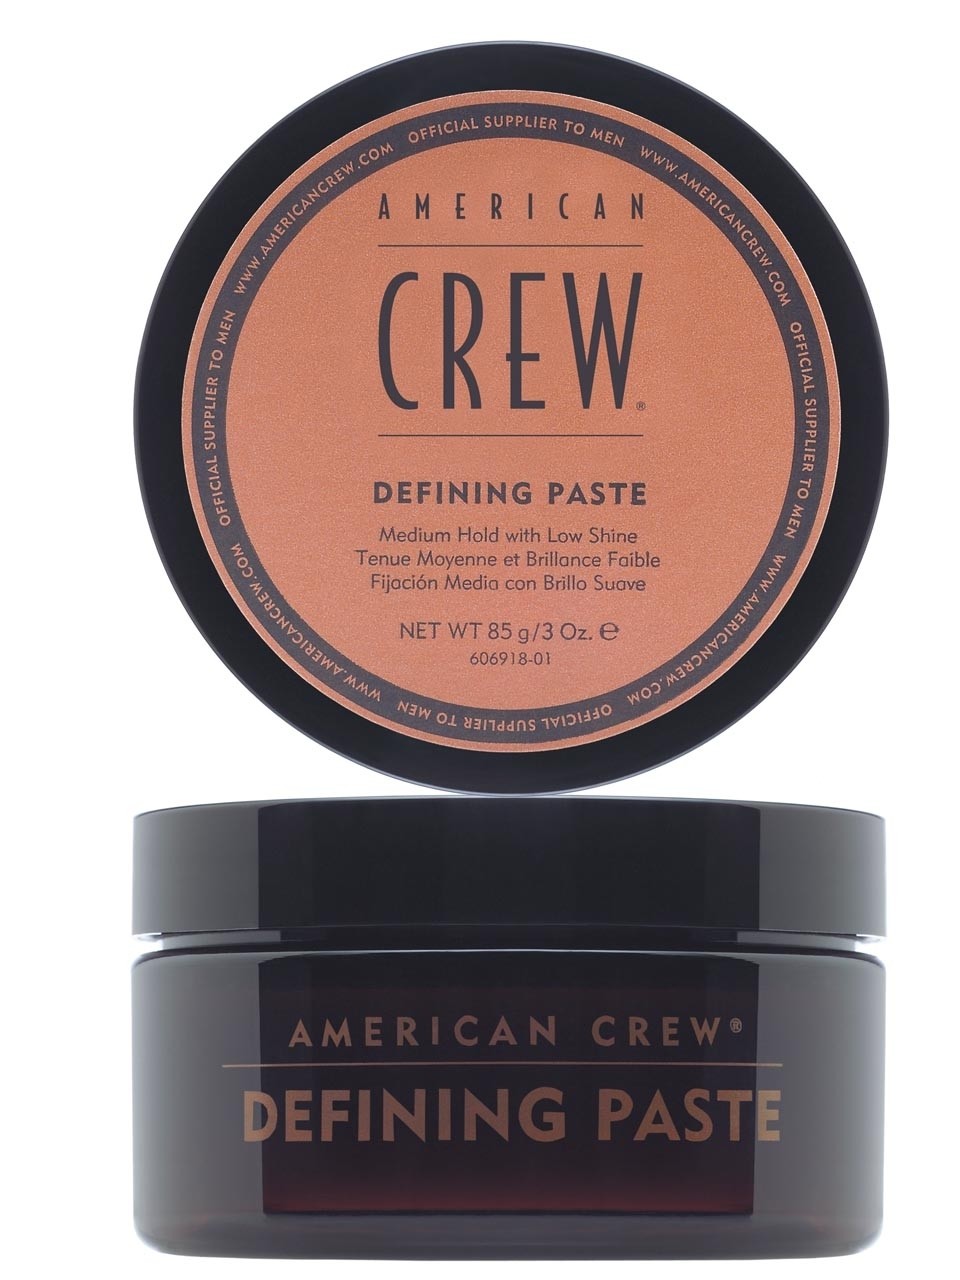 American crew defining paste паста со средней фиксацией и низким уровнем блеска для укладки волос 85г БС